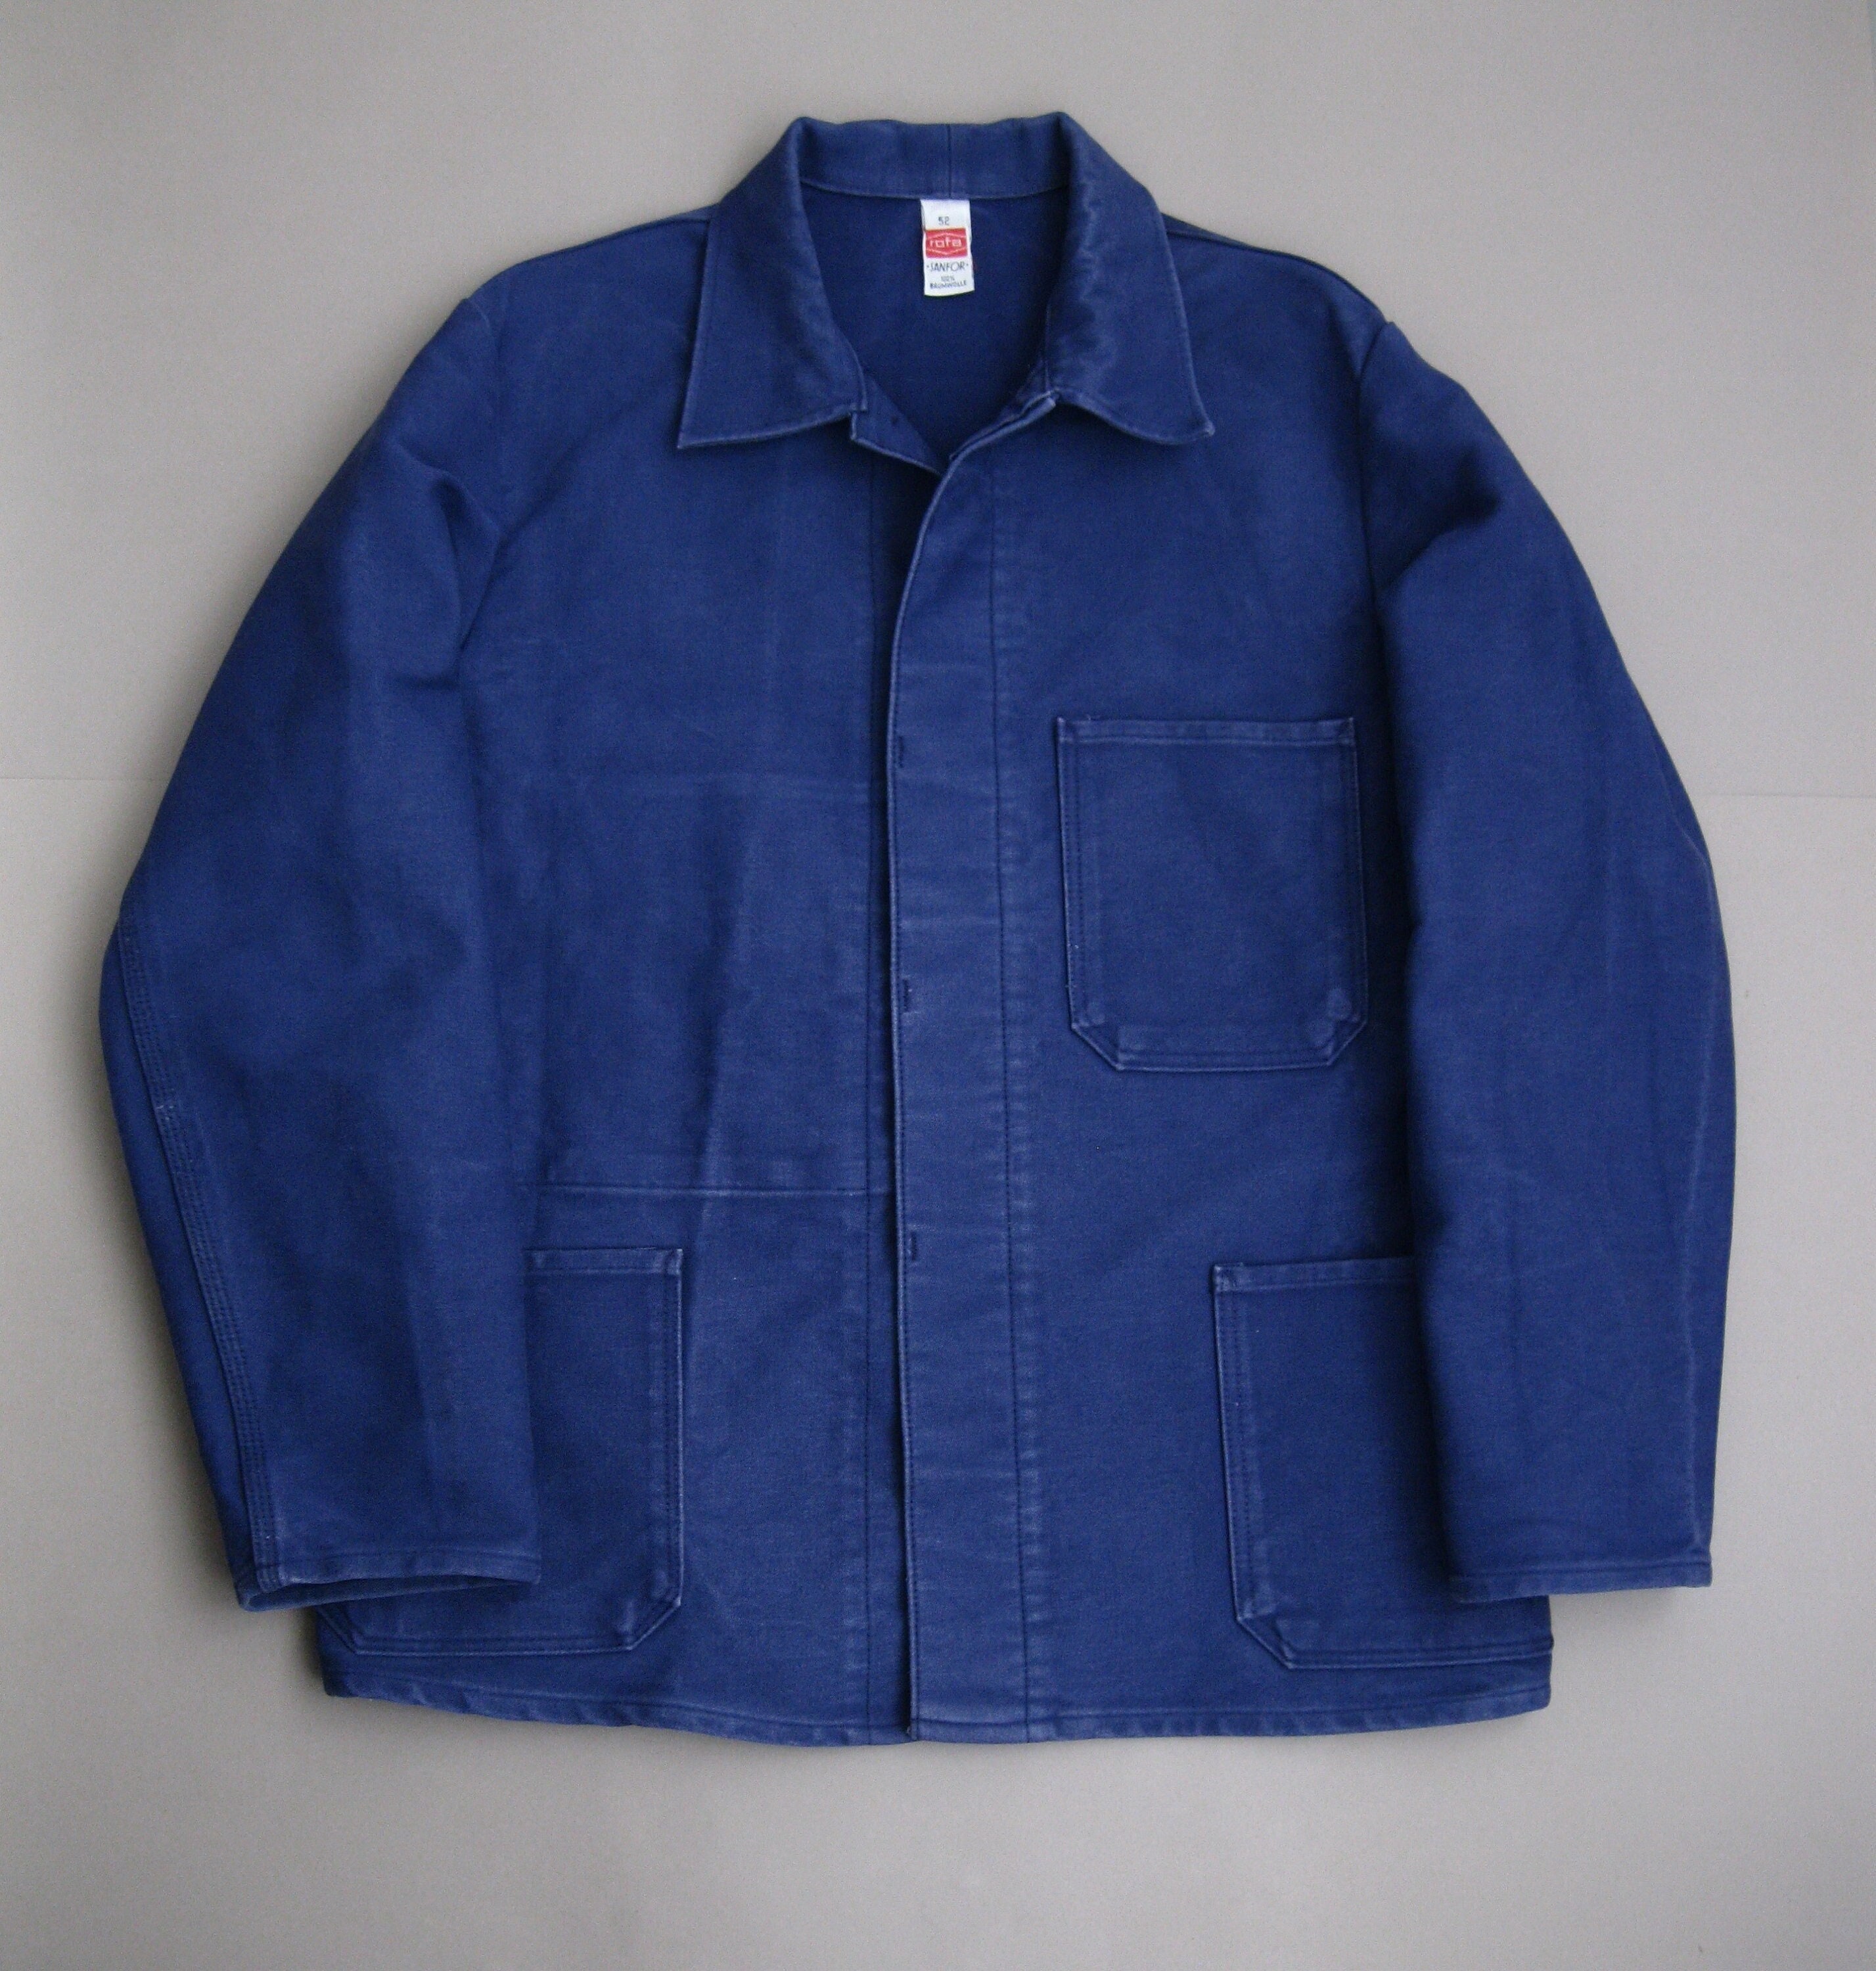 Vintage german moleskin work jacket - カバーオール